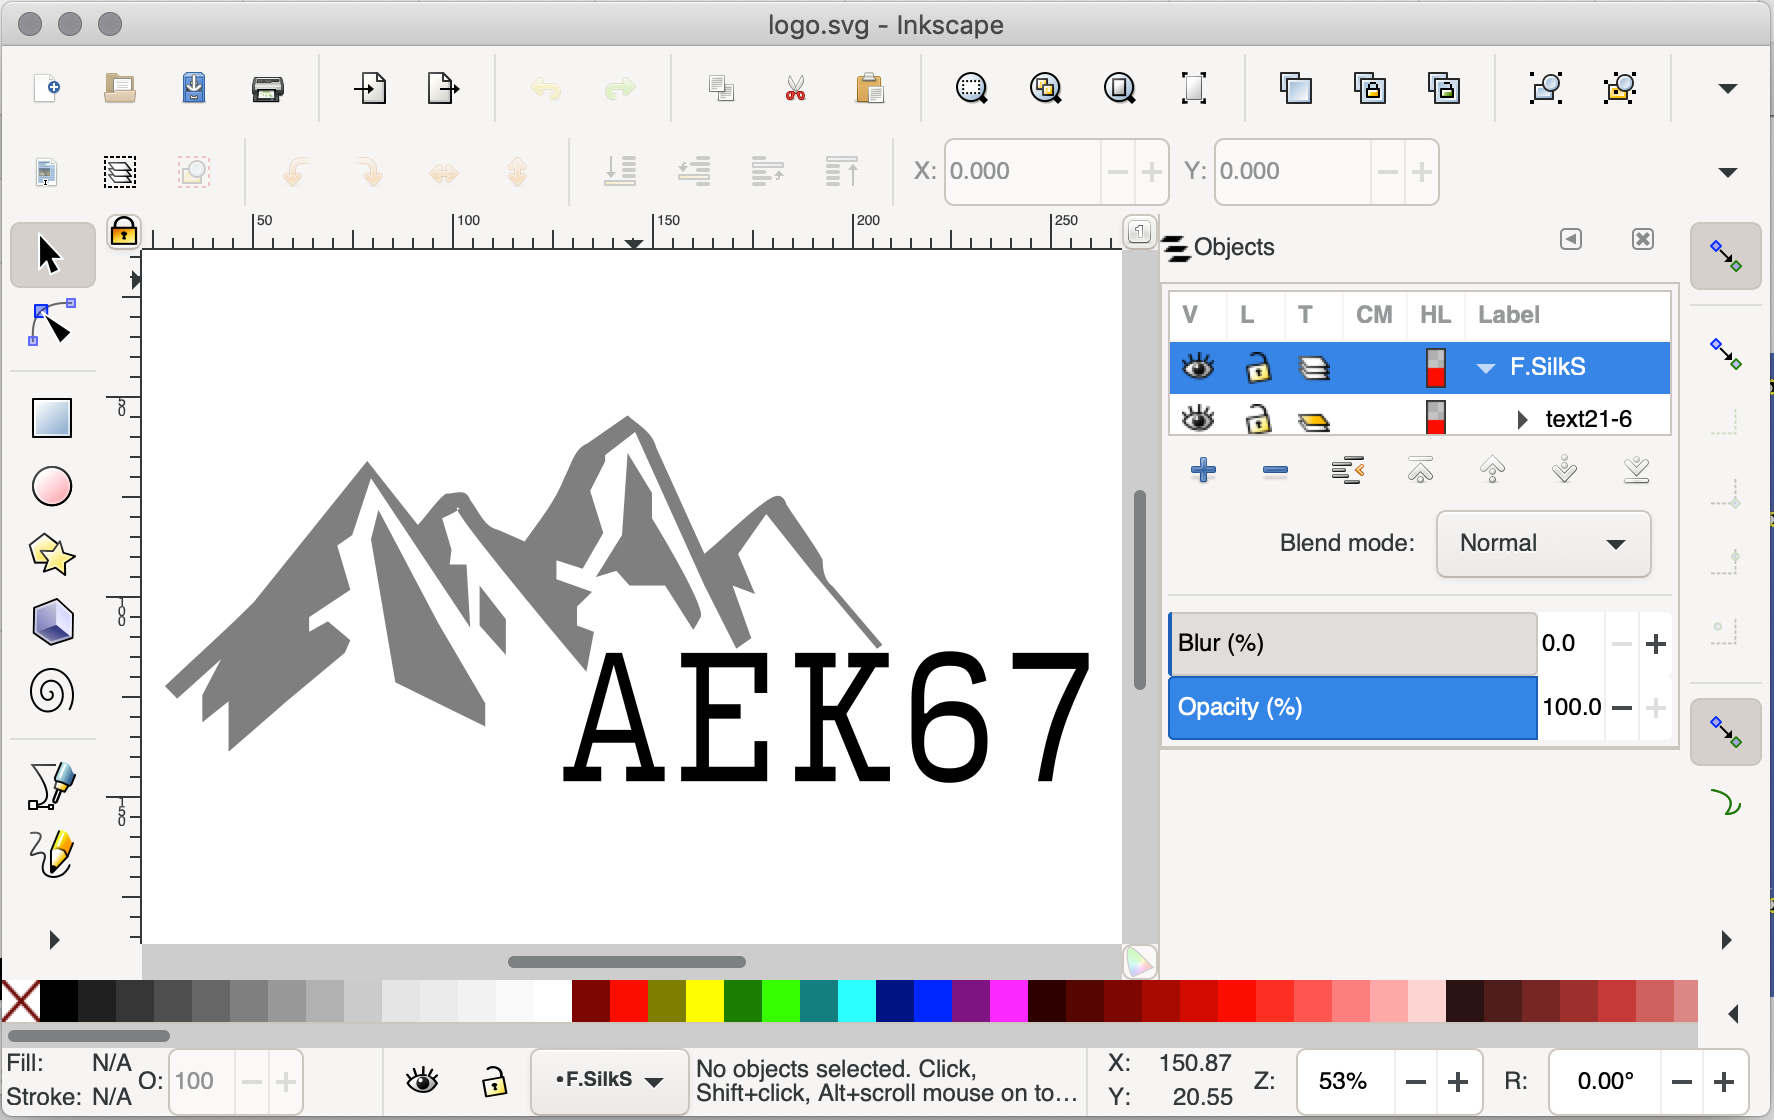 AEK67 logo